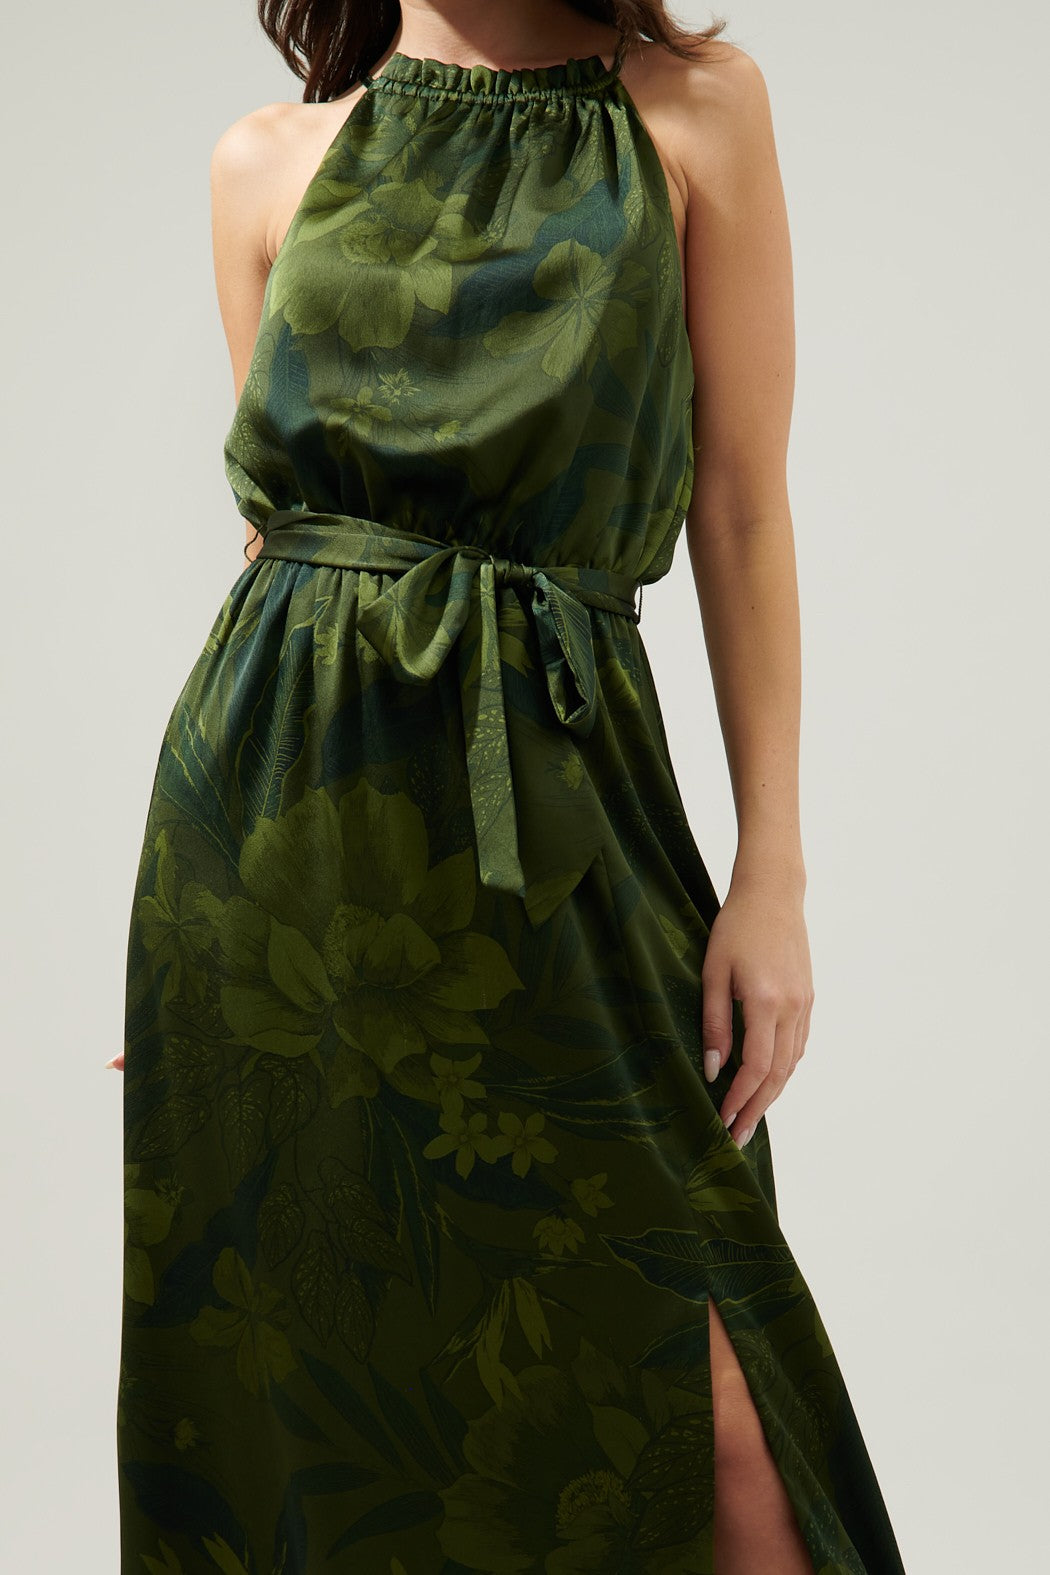 FINAL SALE Ivy Tropics Halter Maxi Dress